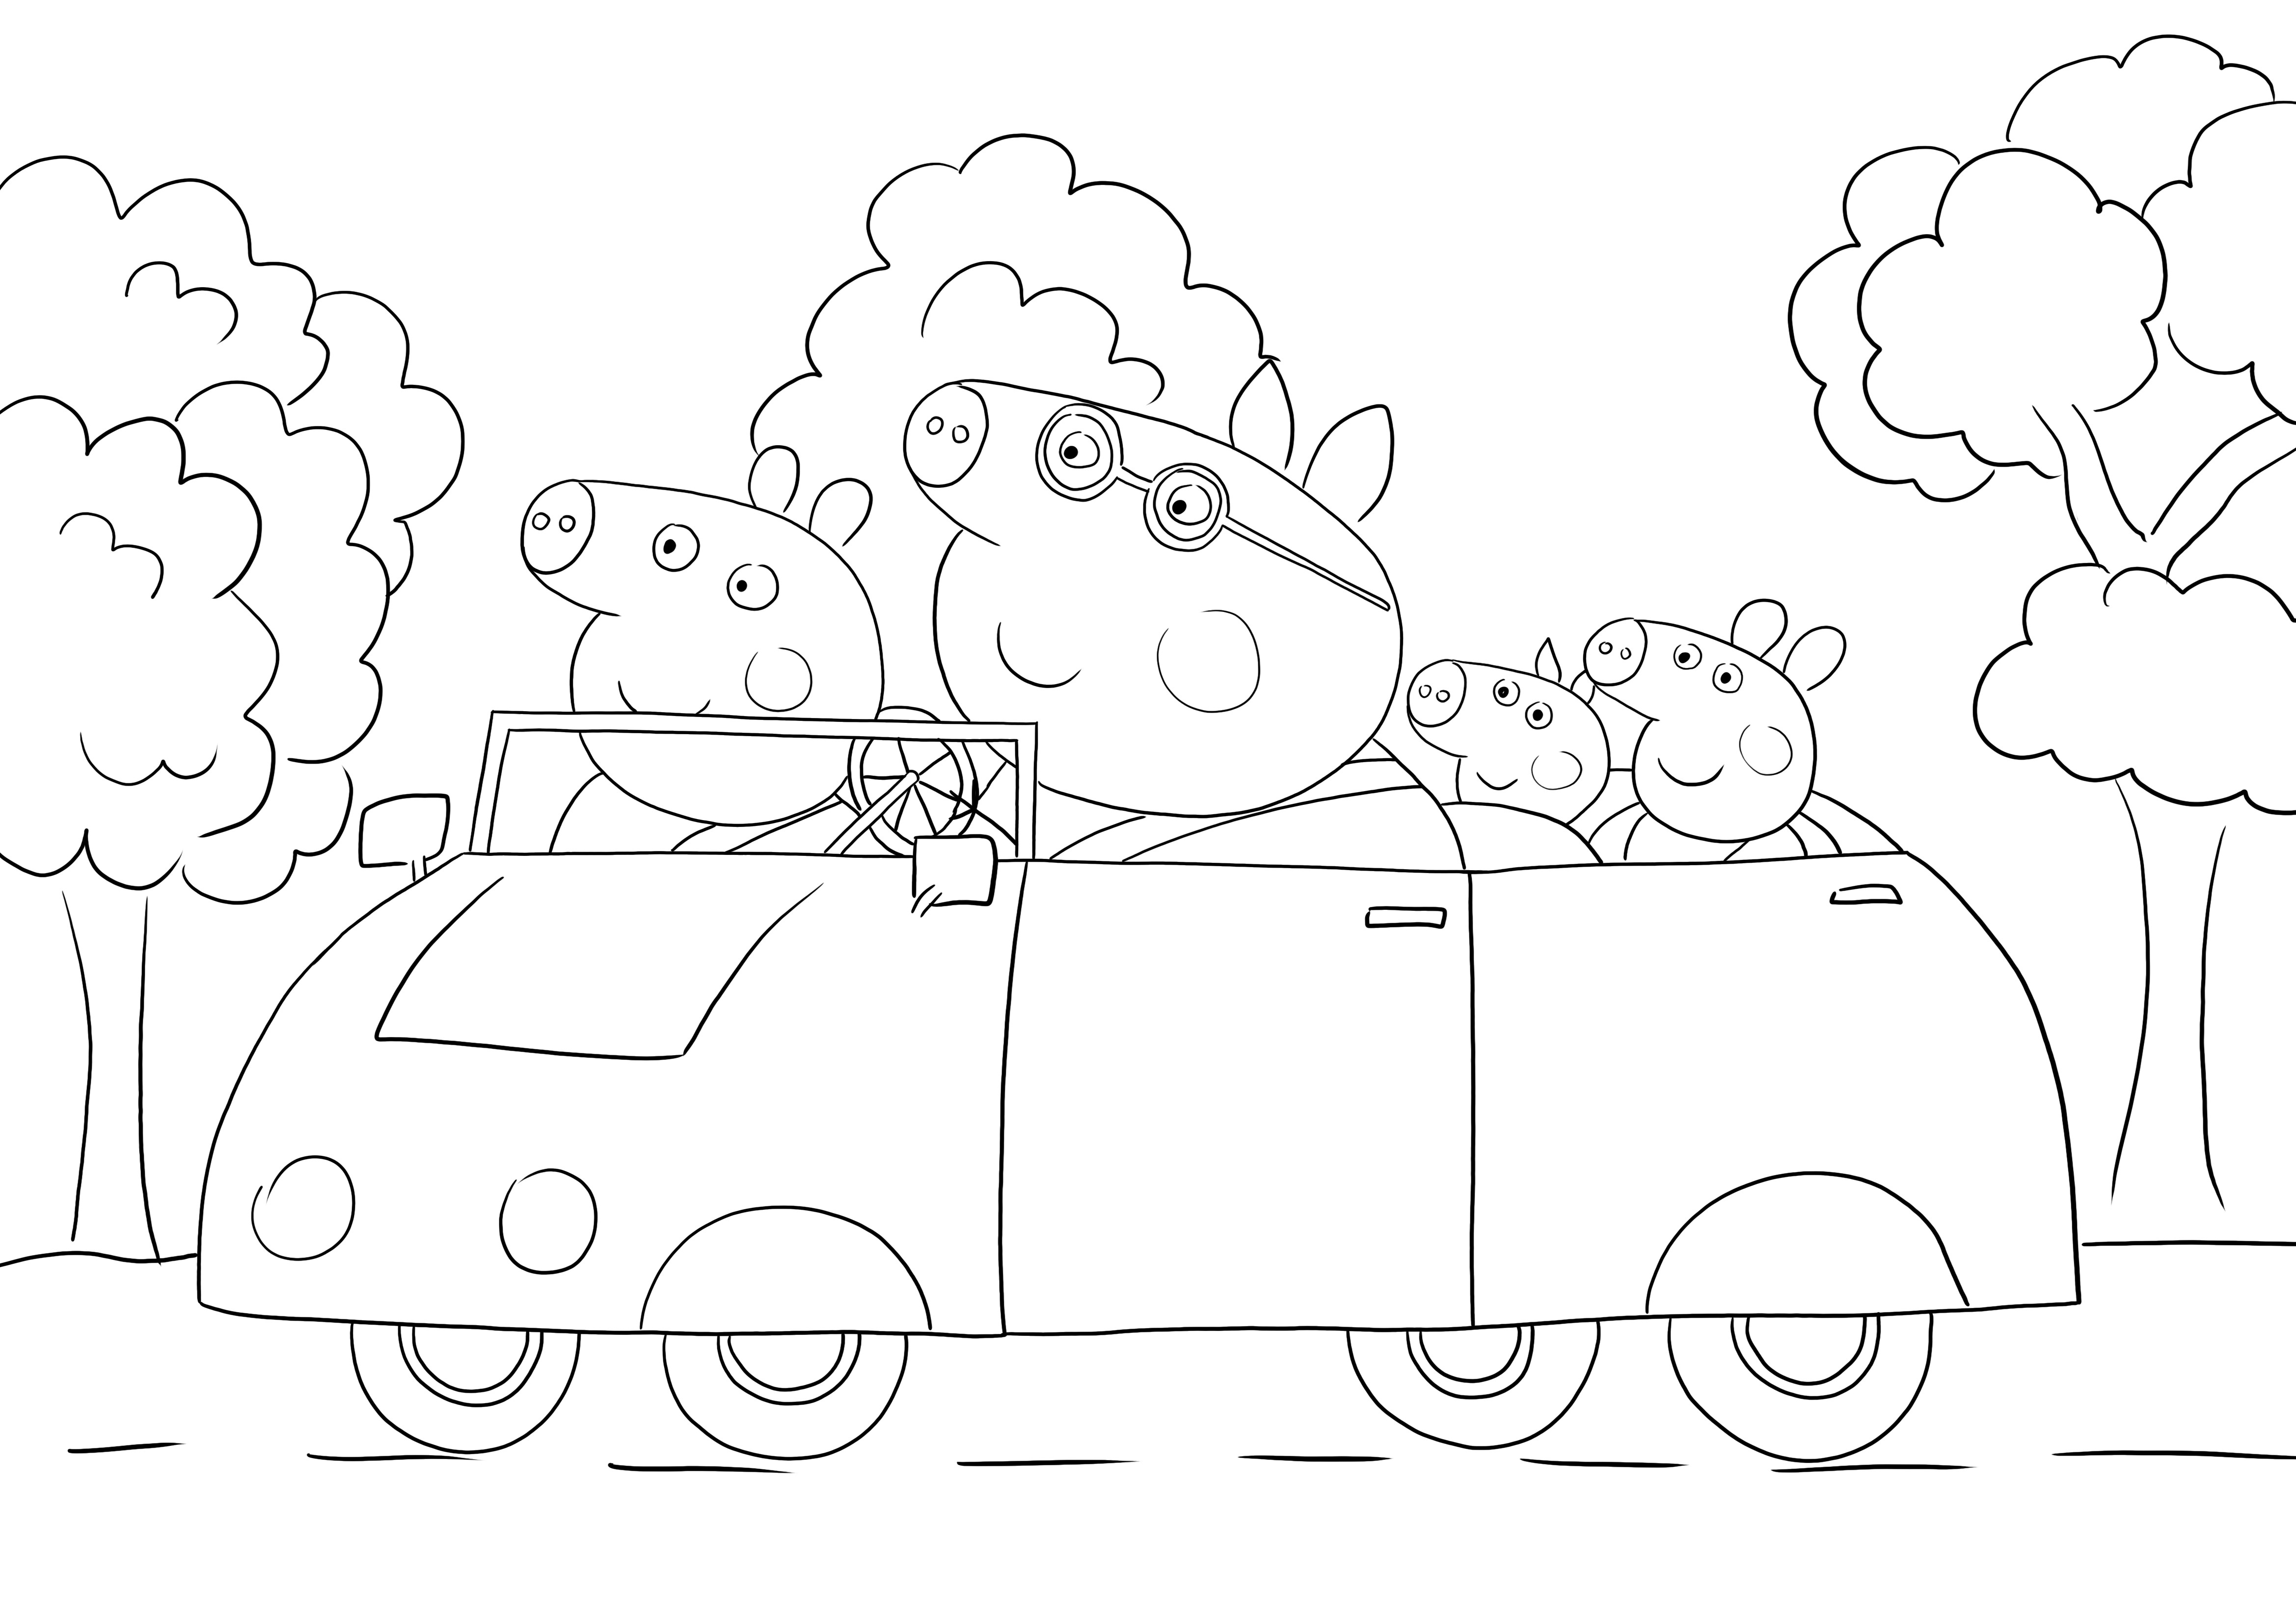 Peppa i rodzina jadą samochodem bez jazdy samochodem do wydrukowania i pokolorowania dla dzieci